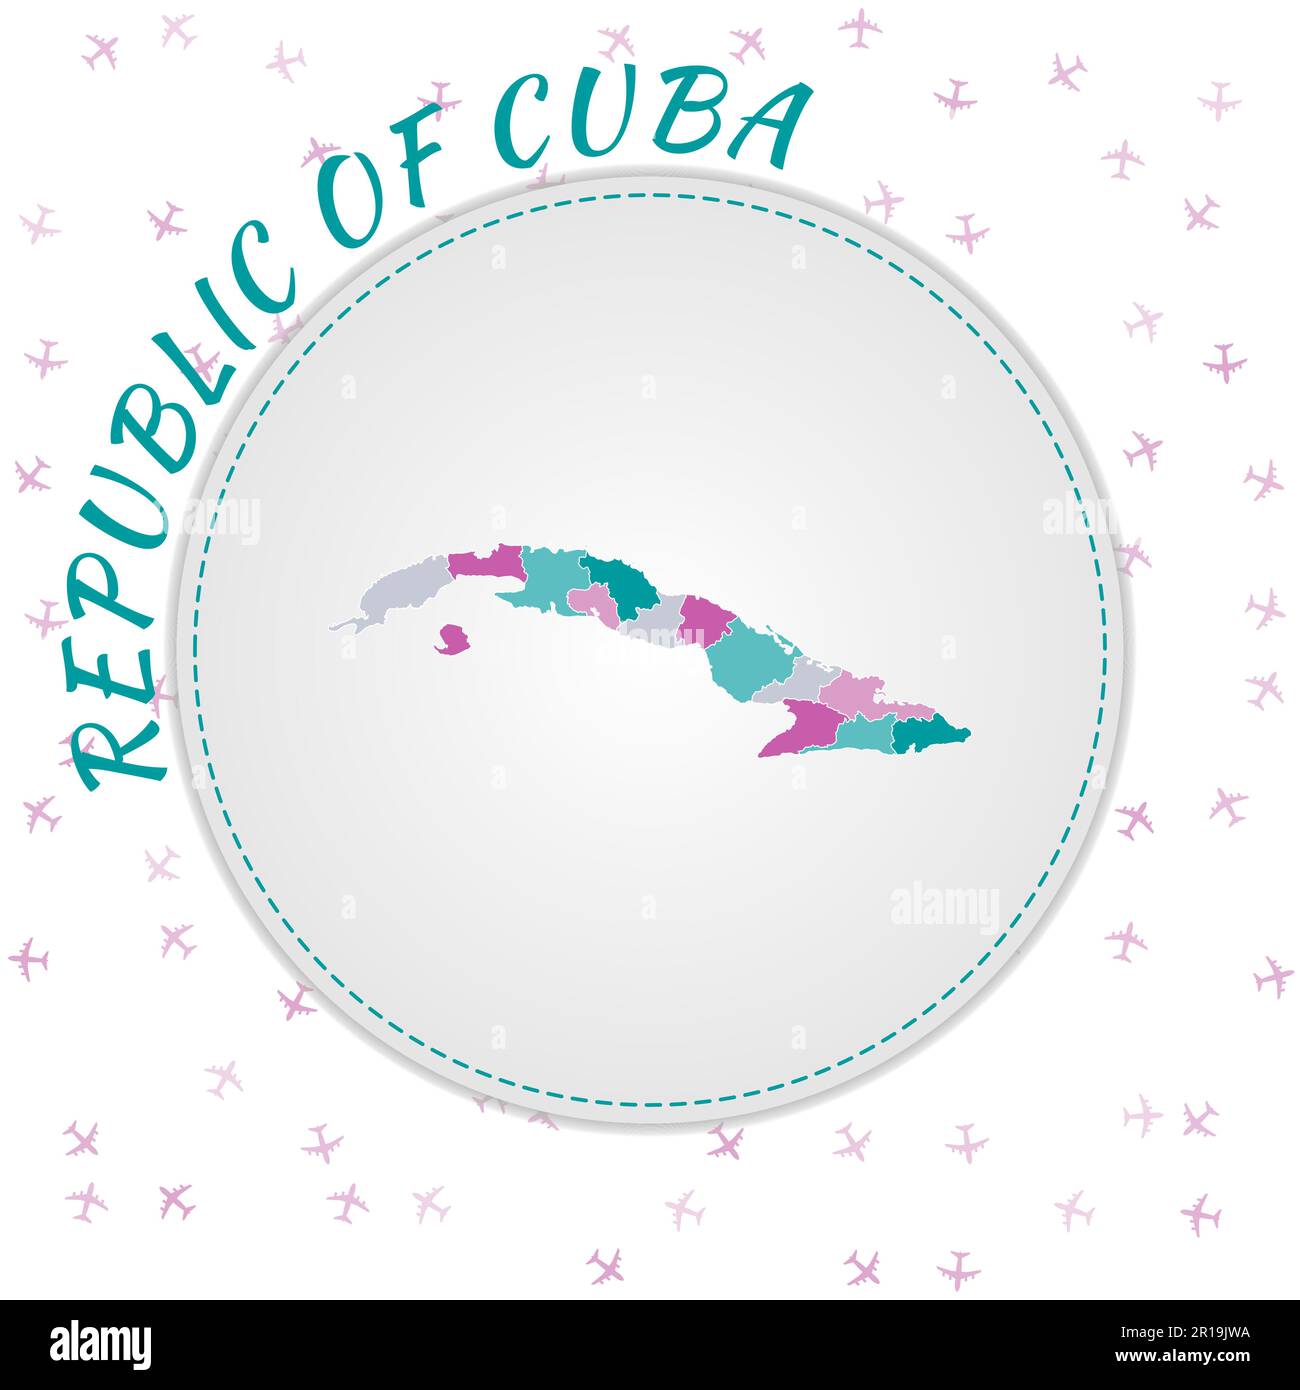 Kubanische Landkarte. Landkarte mit Regionen in der Farbpalette Smaragd-Amethyst. Abgerundetes Poster „Reise nach Kuba“ mit Ländernamen und Flugzeugen zurück Stock Vektor